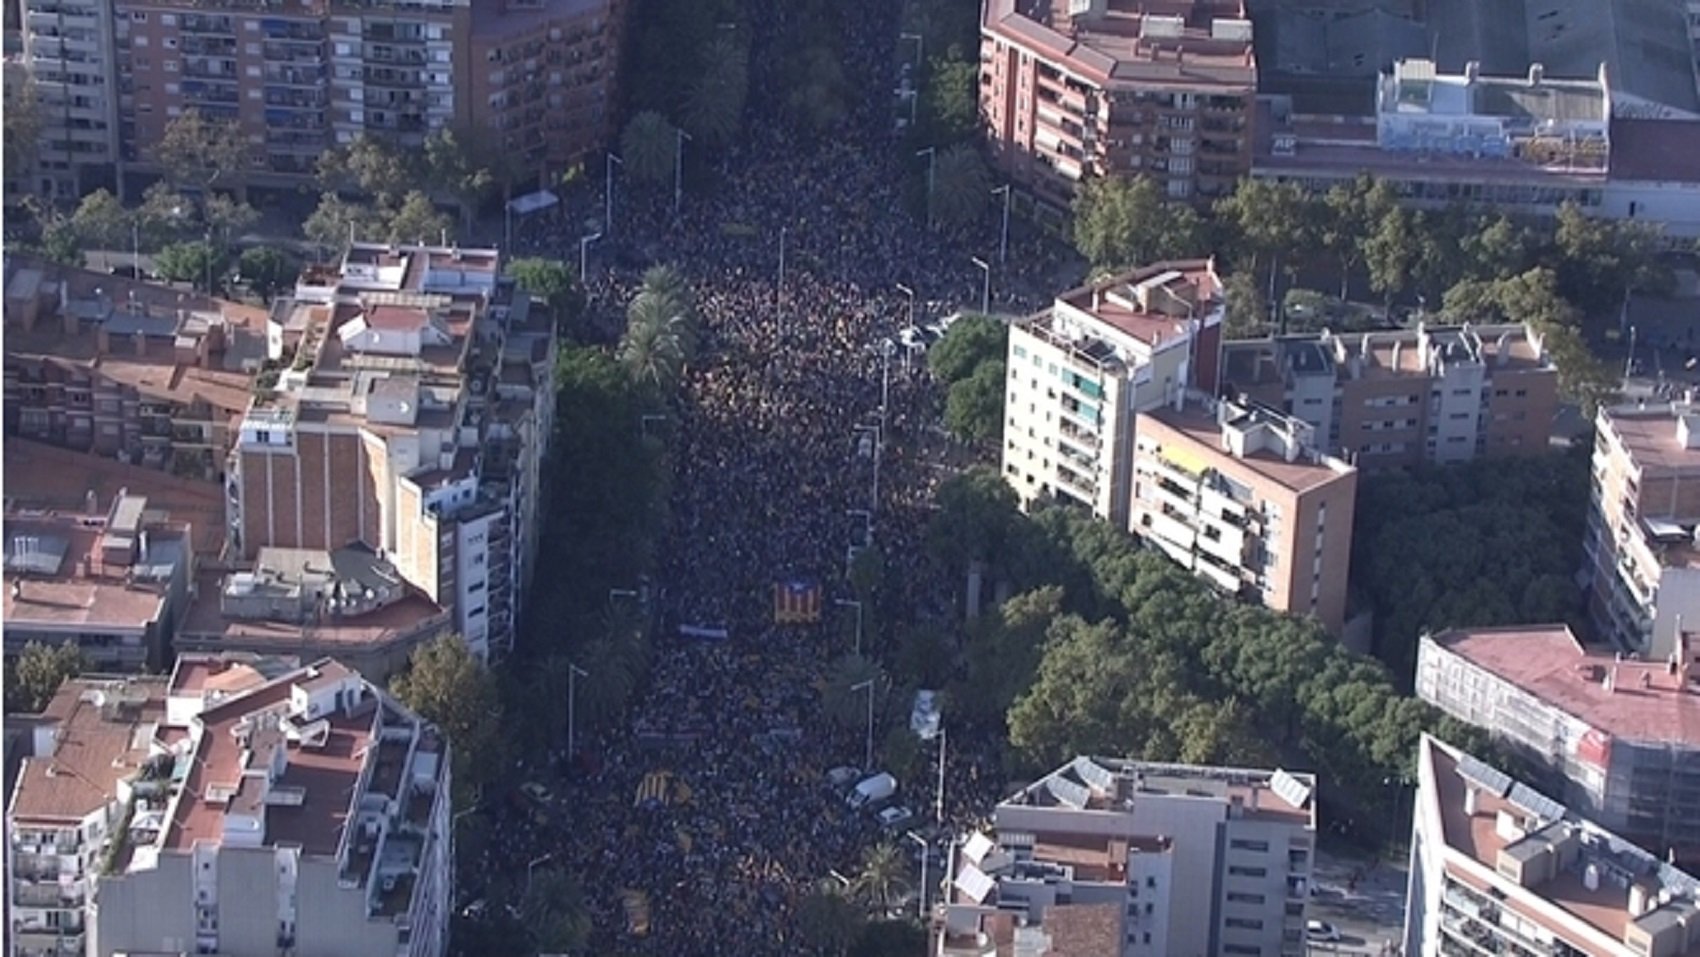 La manifestació per la "Llibertat" vista des de l'aire